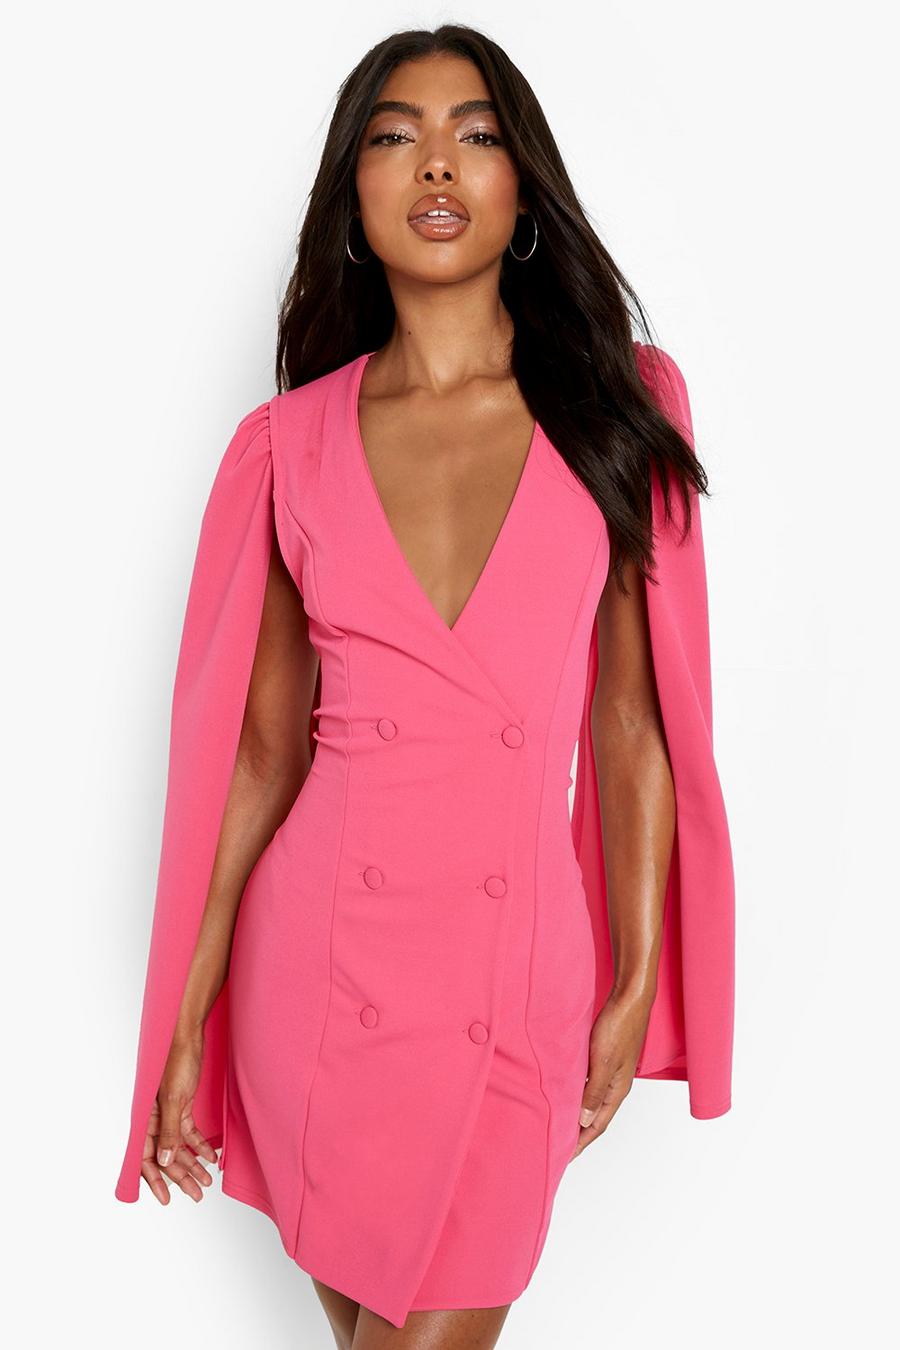 Hot pink Tall Cape Sleeve Blazer Dress